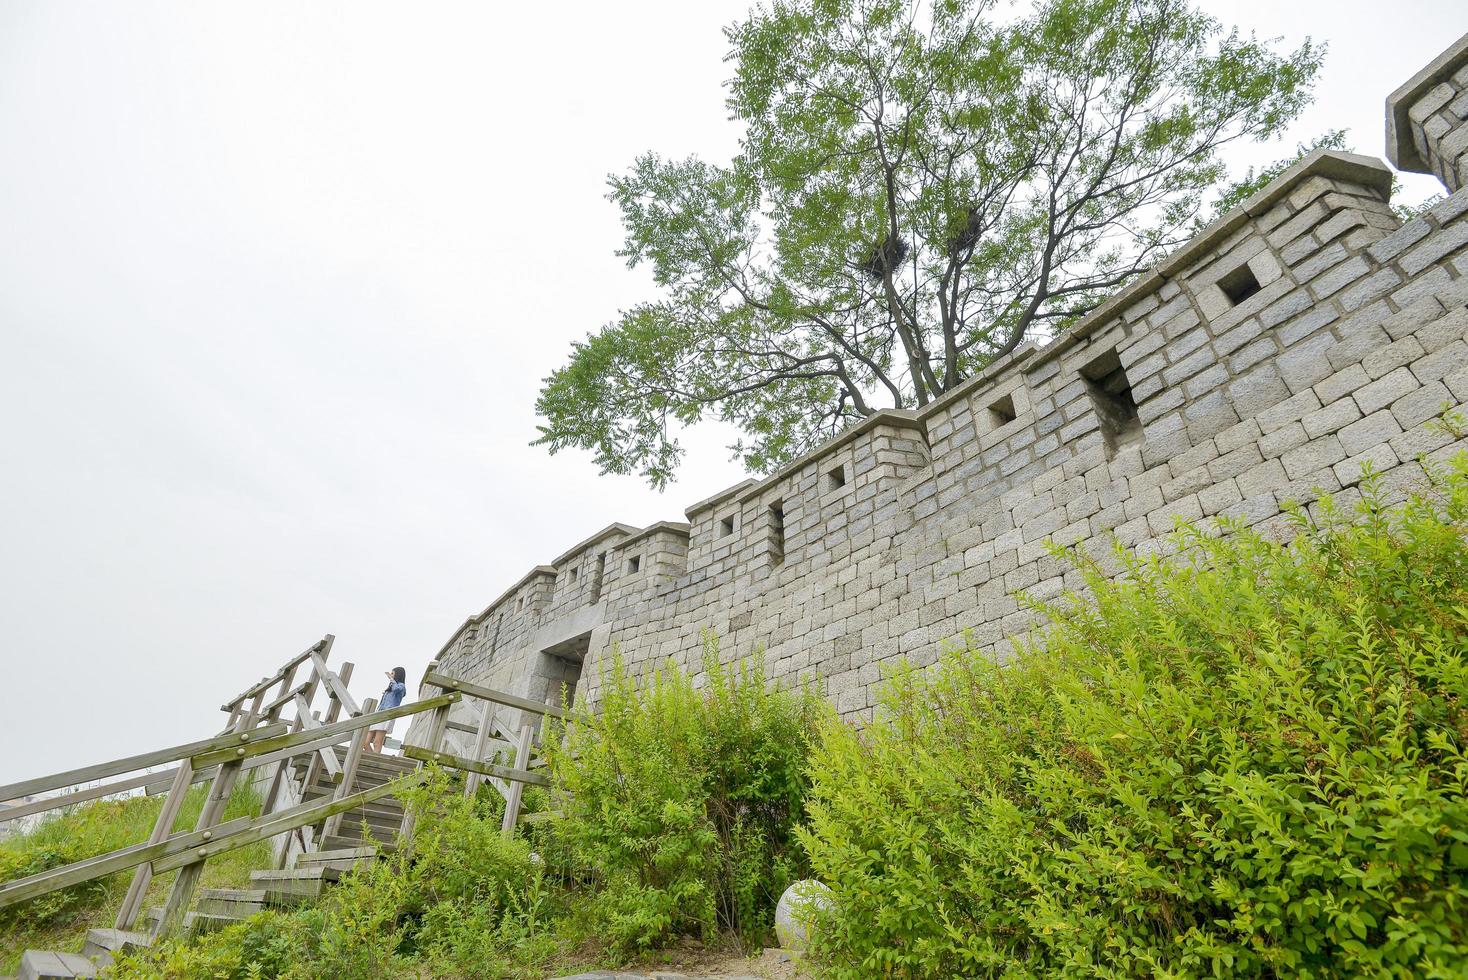 fortezza di seoul sulla montagna naksan foto